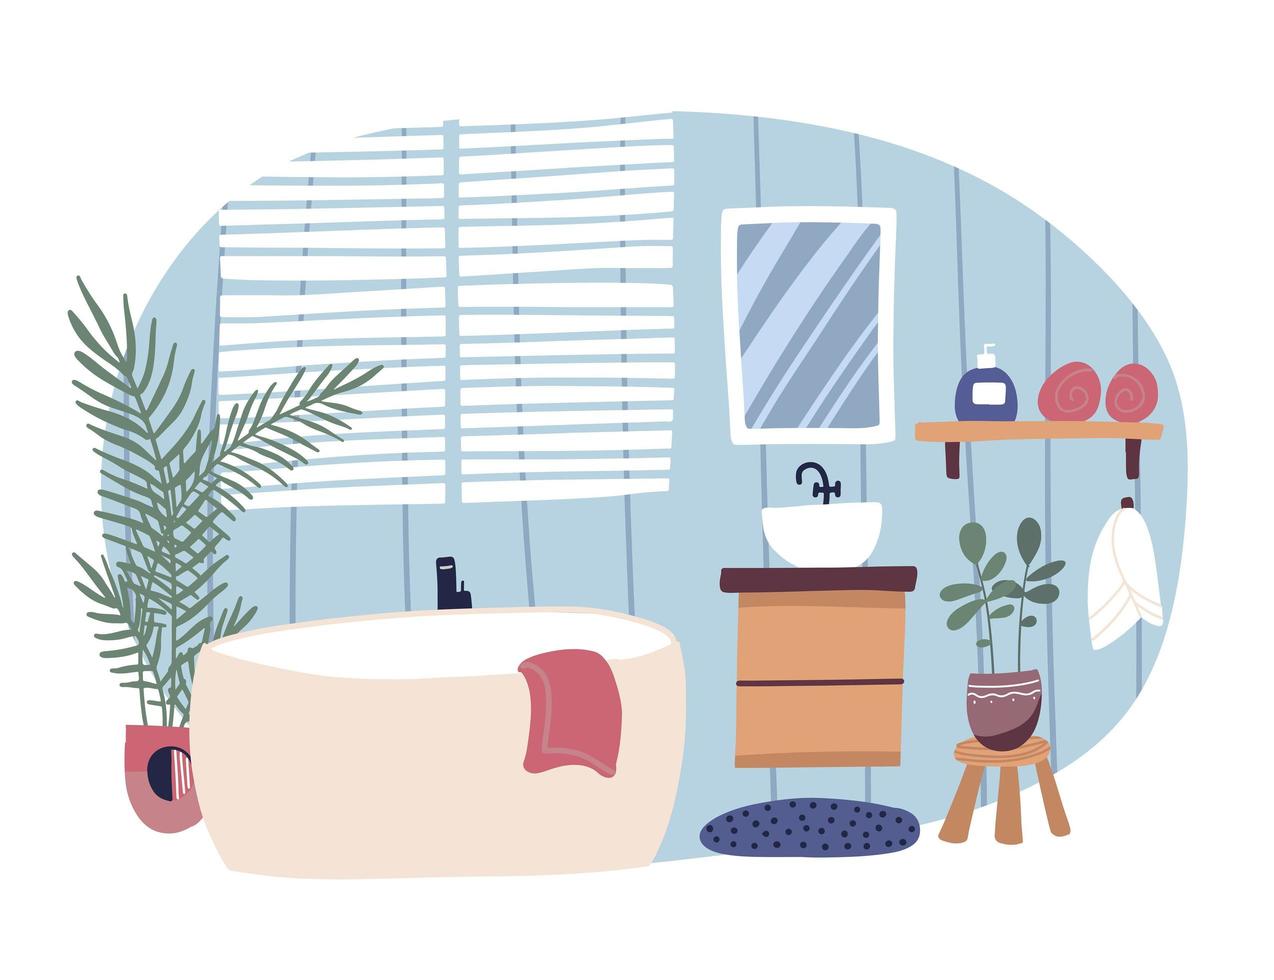 baño interior amueblado con bañera y lavabo. bañera moderna en una habitación acogedora. Ilustración de vector plano colorido aislado sobre fondo blanco. concepto de estilo escandinavo.